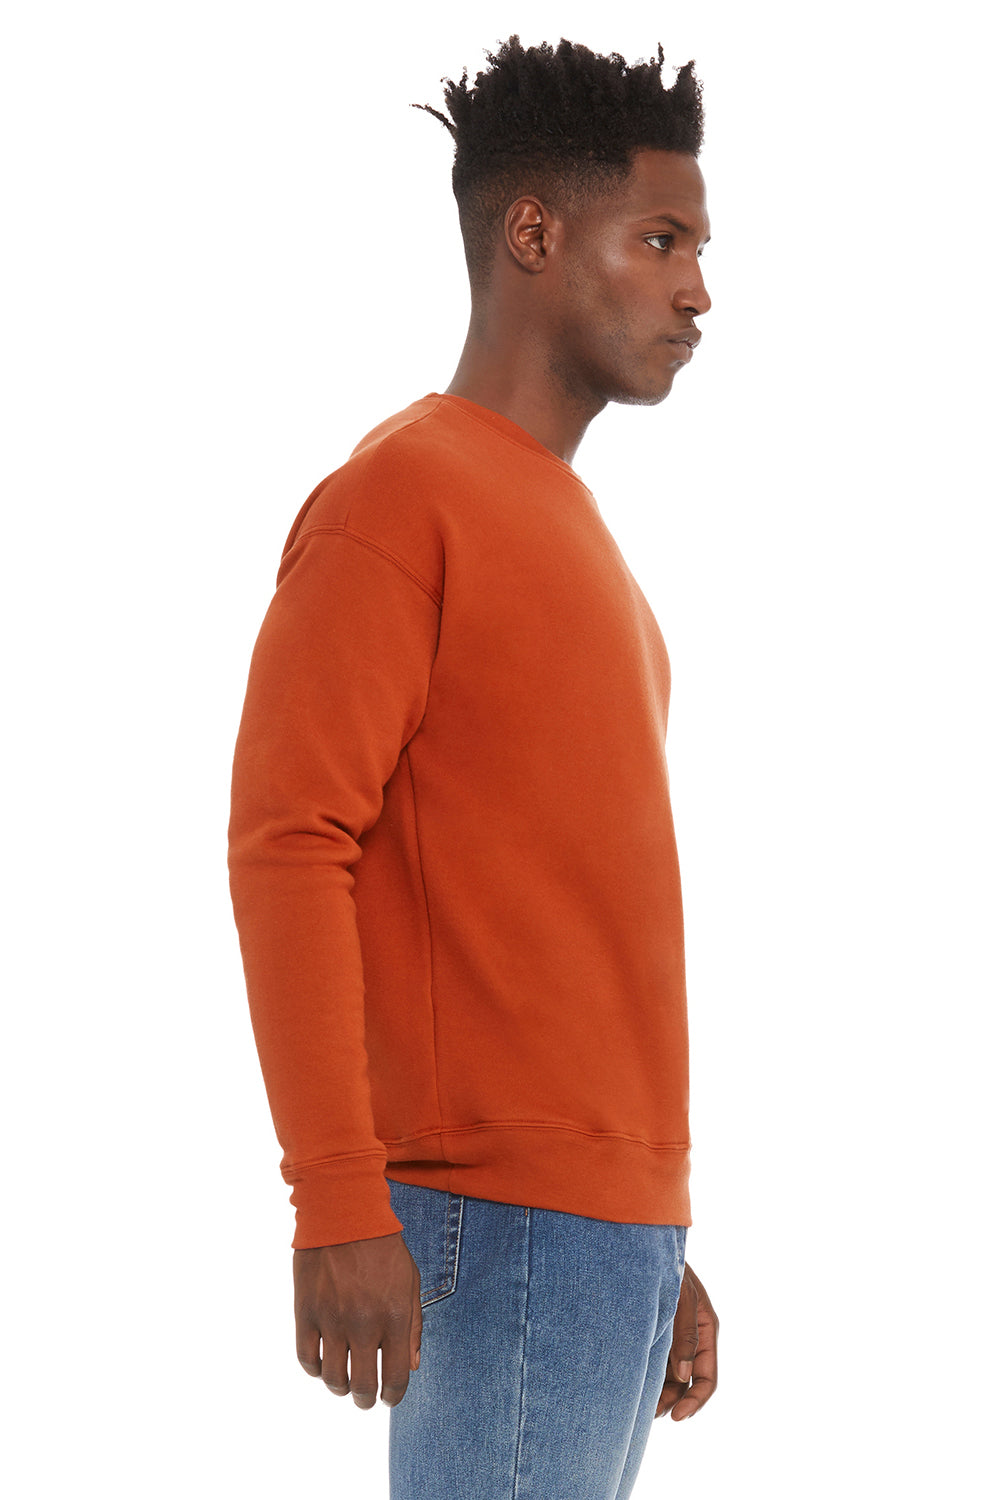 Bella + Canvas BC3945/3945 Mens Fleece Crewneck Sweatshirt Brick Red Model Side